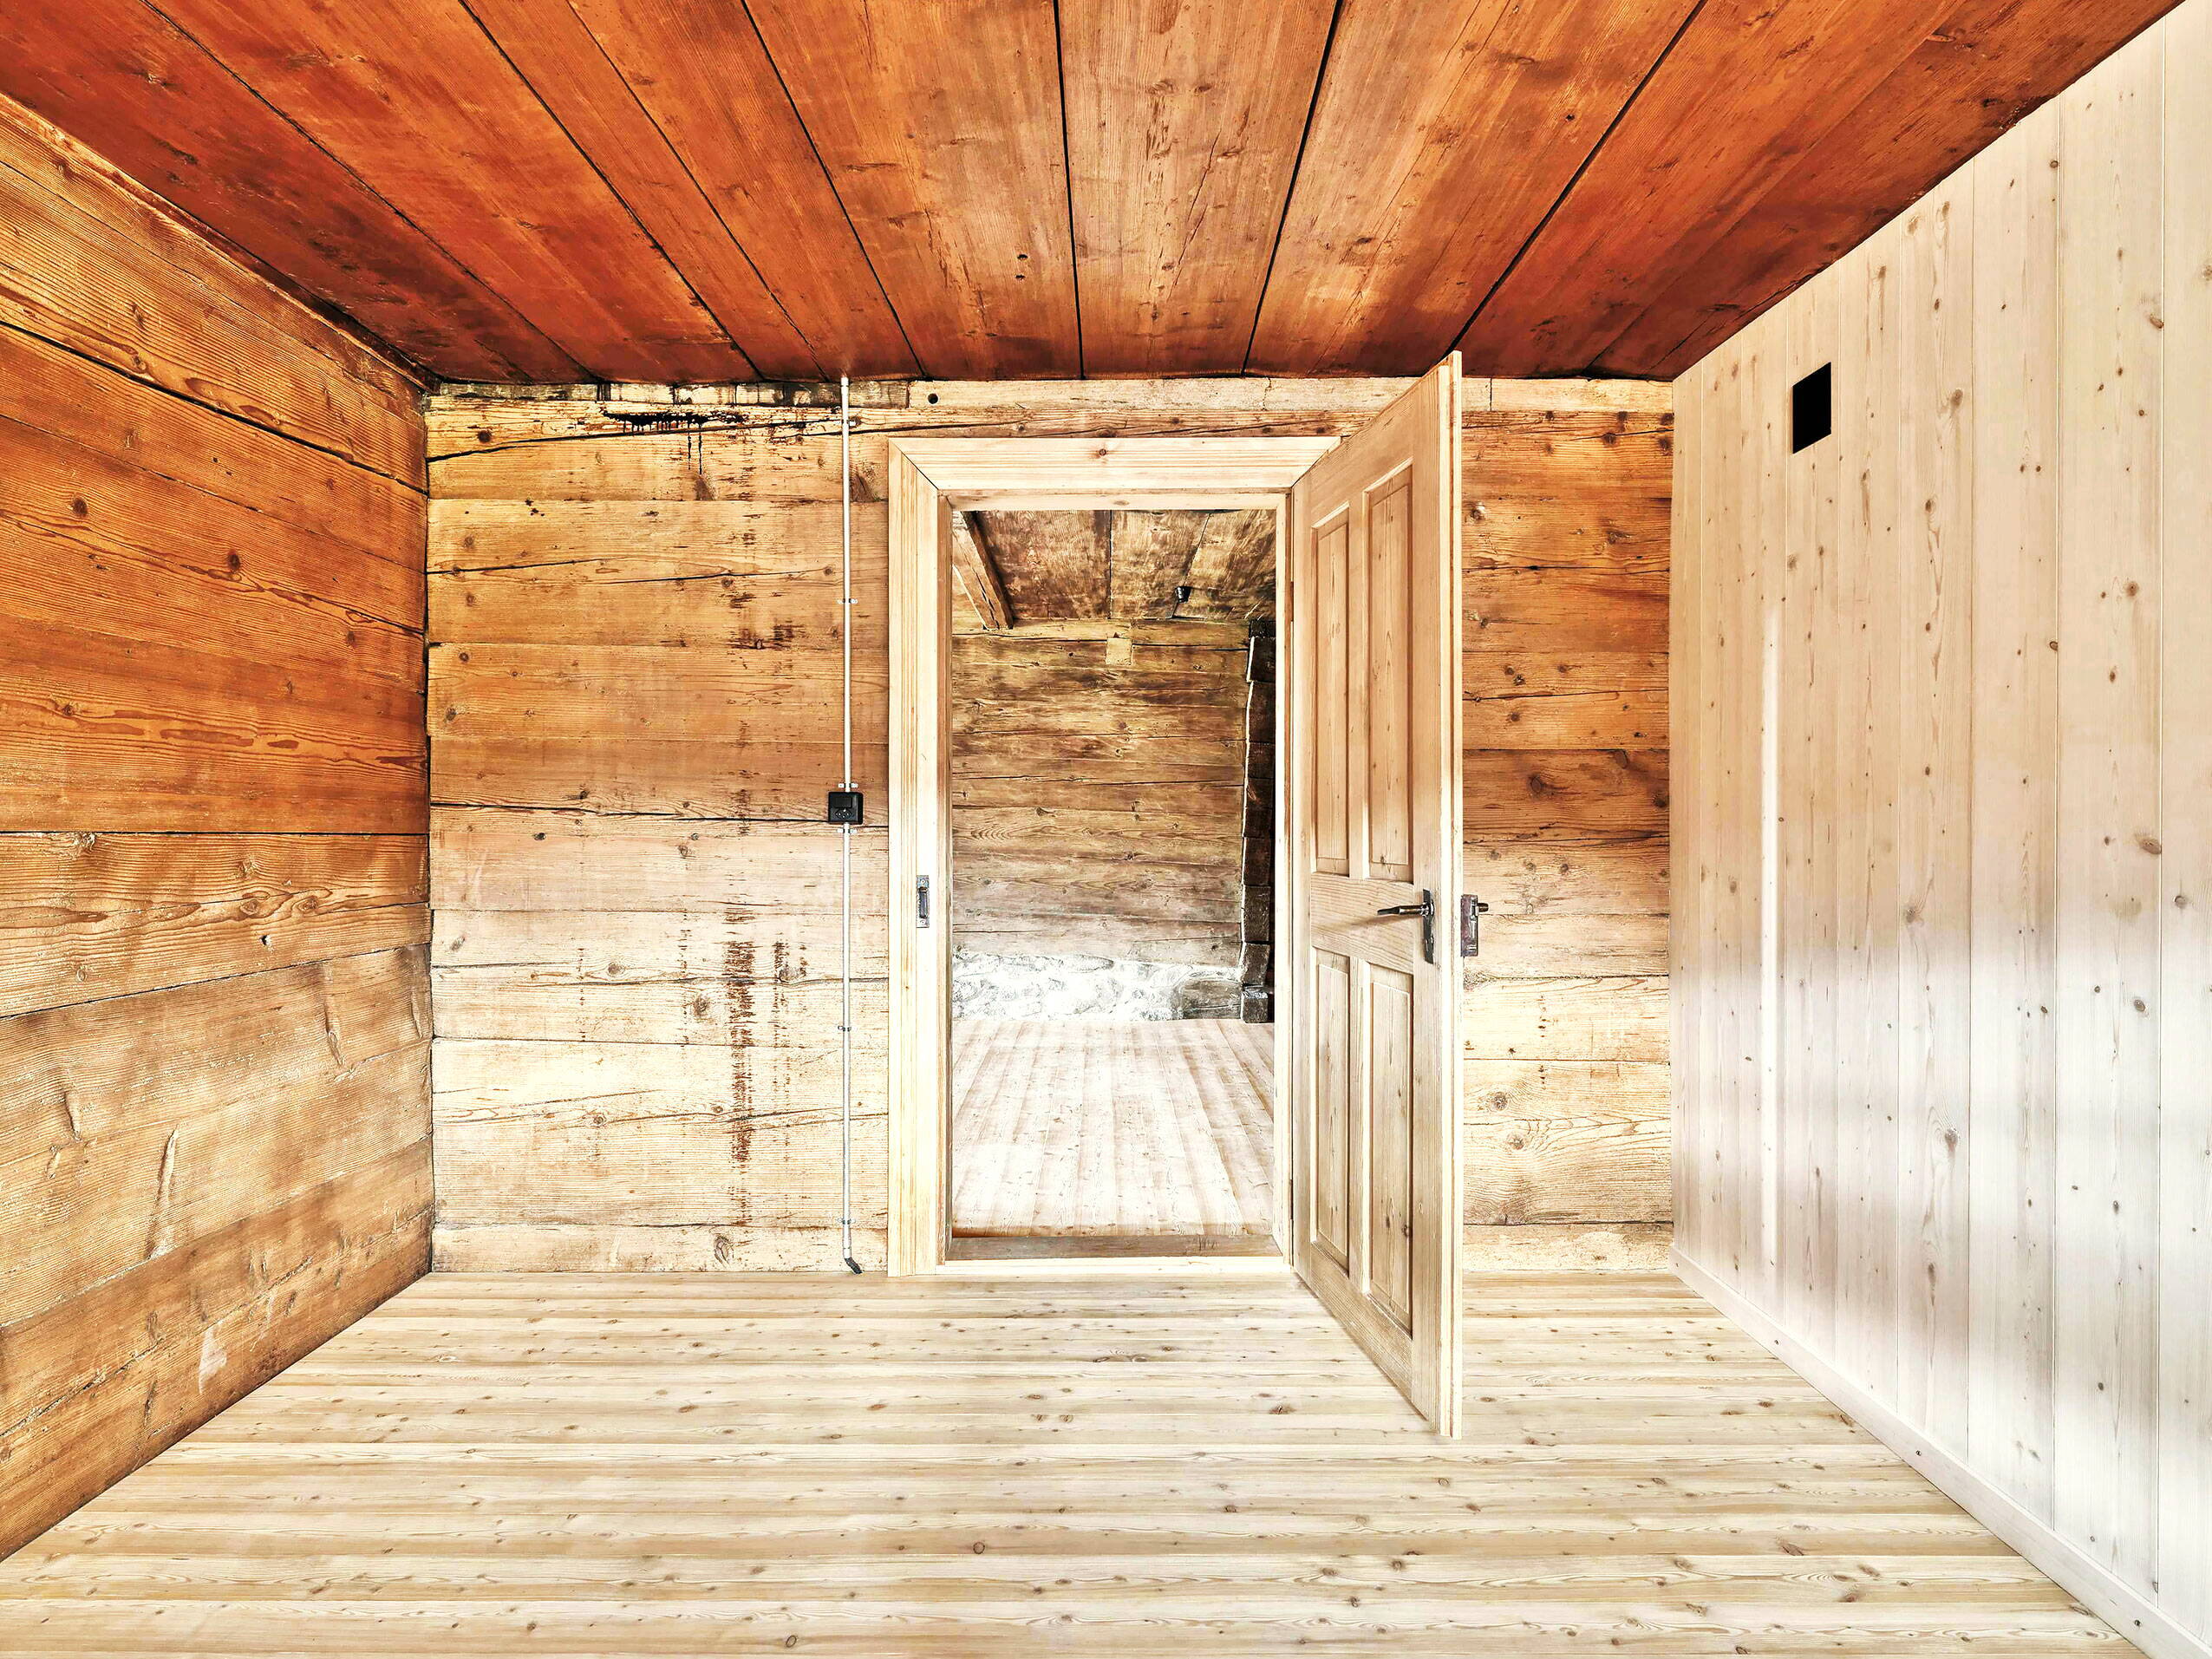 Sicht in einen Raum eines Altbaus der komplett aus Holz gefertigt ist.